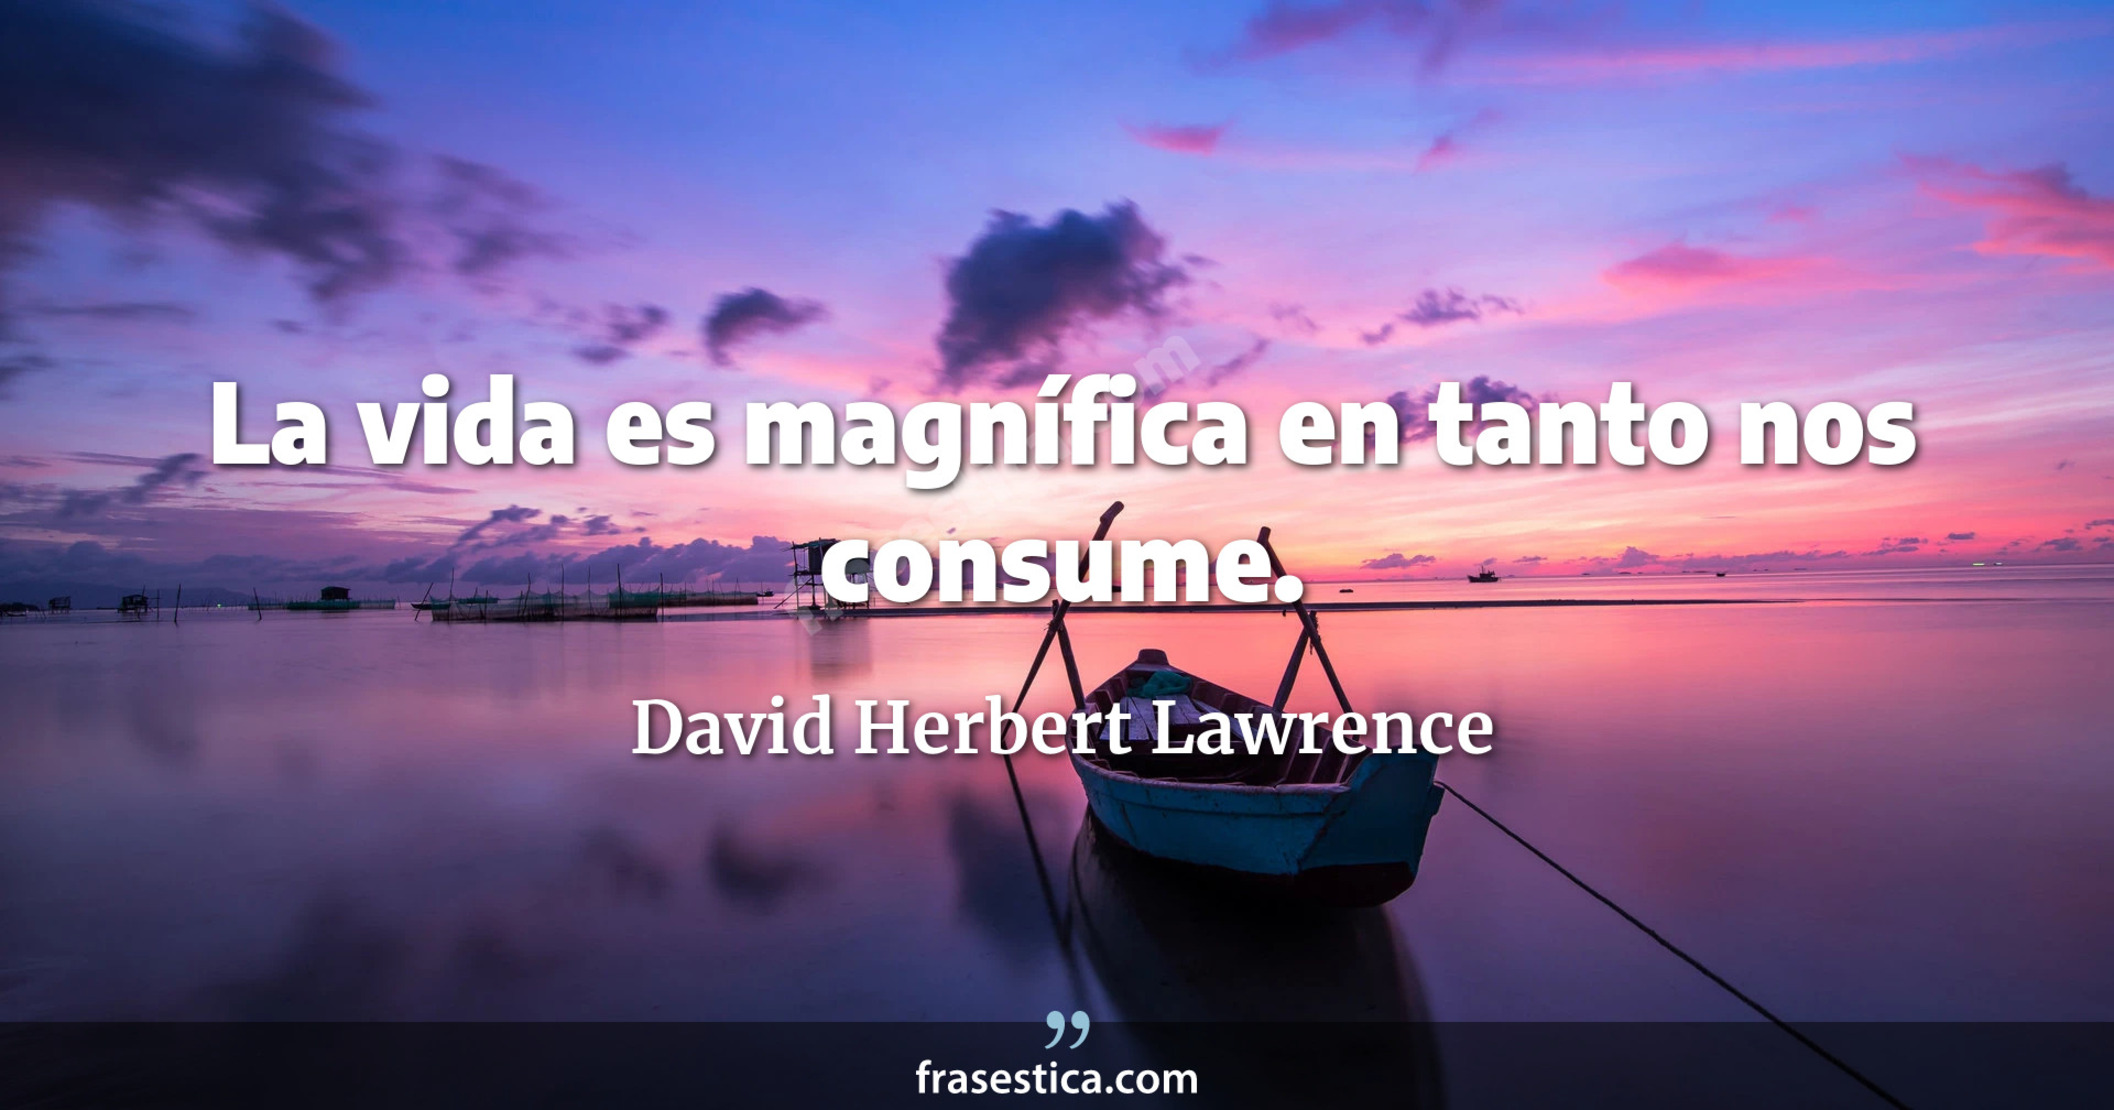 La vida es magnífica en tanto nos consume. - David Herbert Lawrence